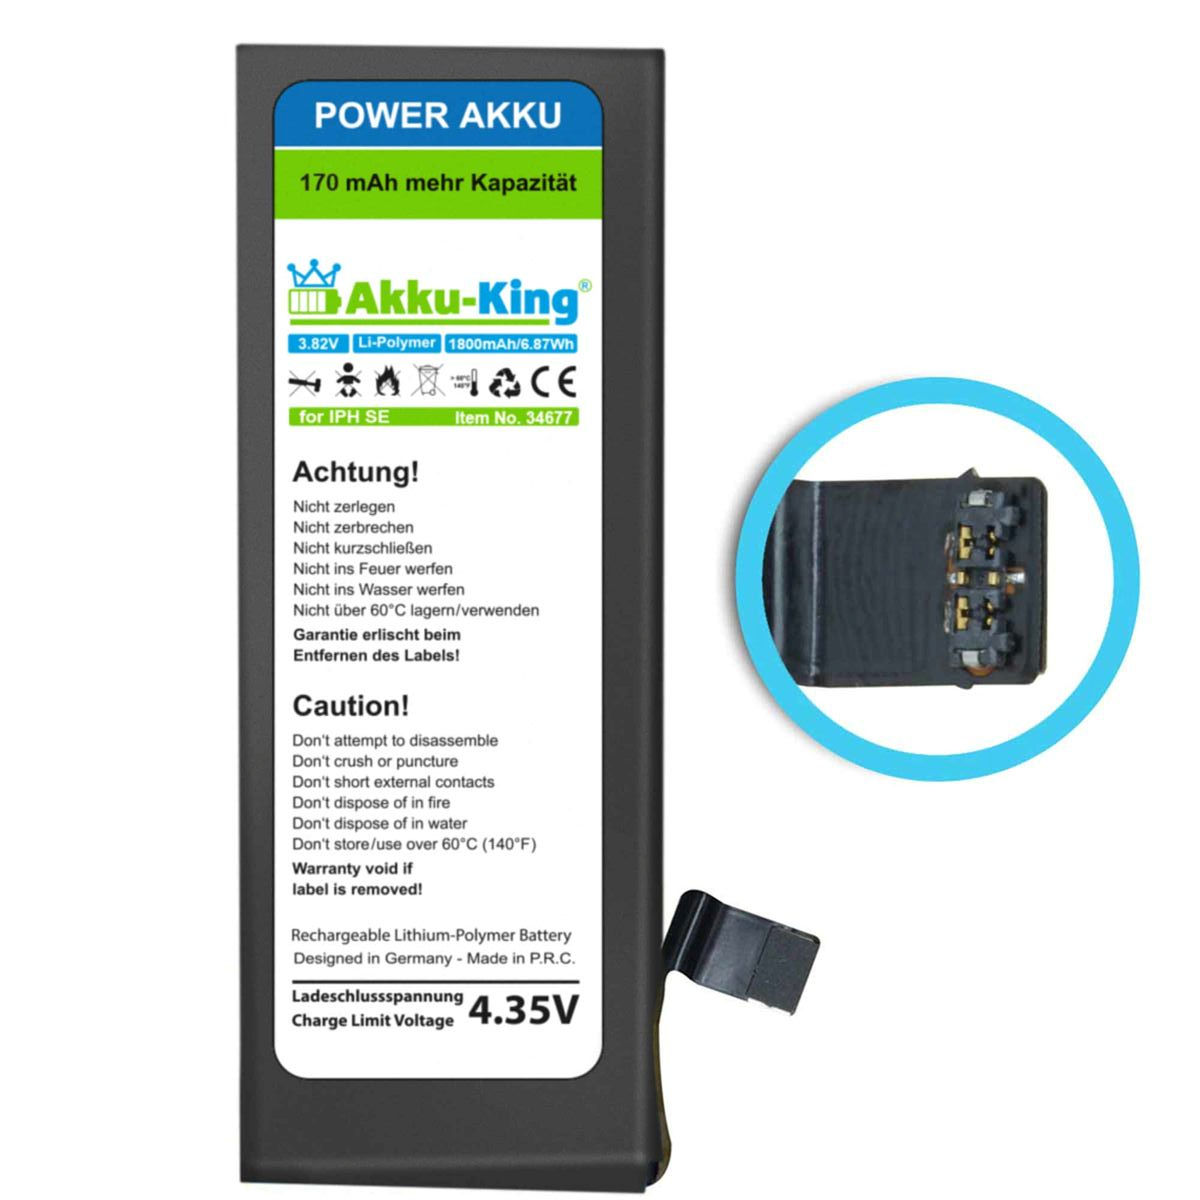 Akku-King Power-Akkus für iPhone 7 / 7 Plus und SE mit mehr Leistung als beim Originalakku!